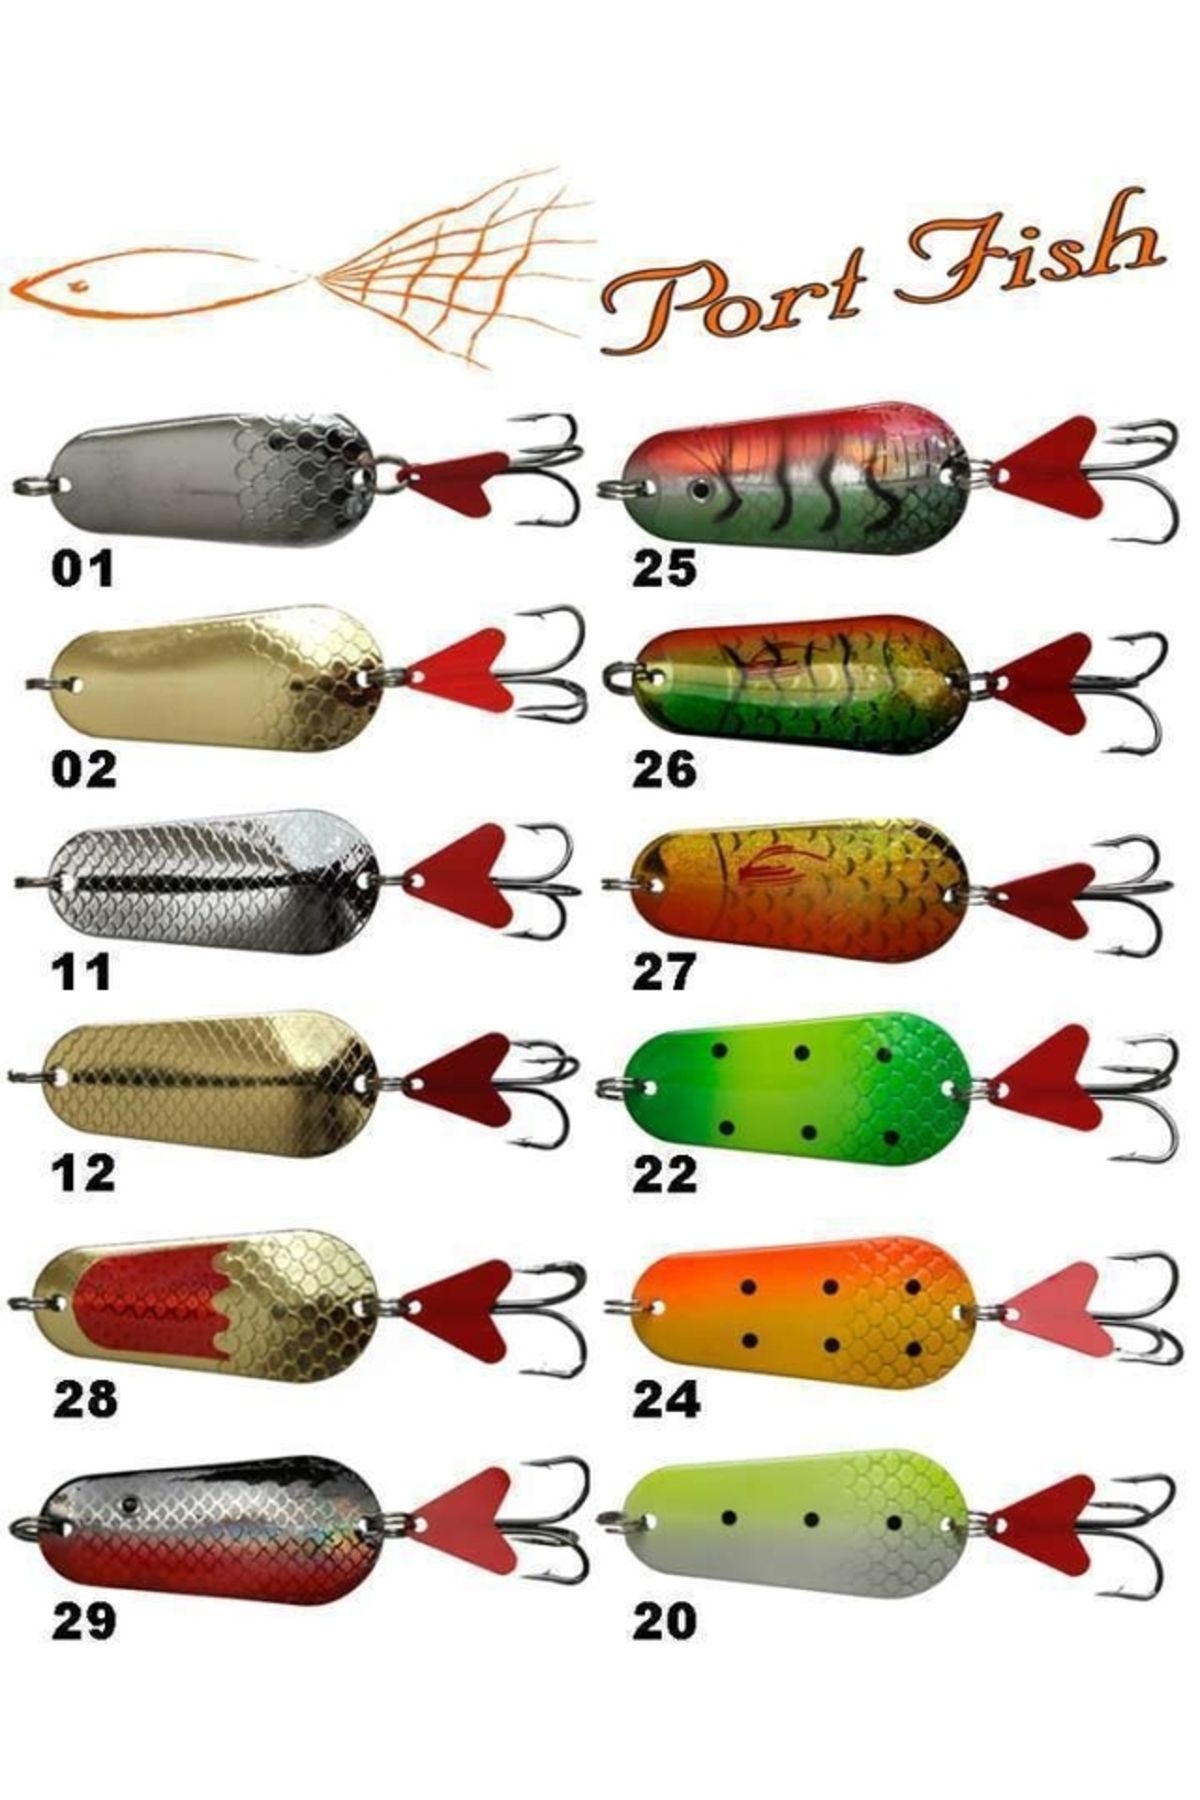 Genel Markalar Portfish Turna Kaşığı 30gr Renk:26